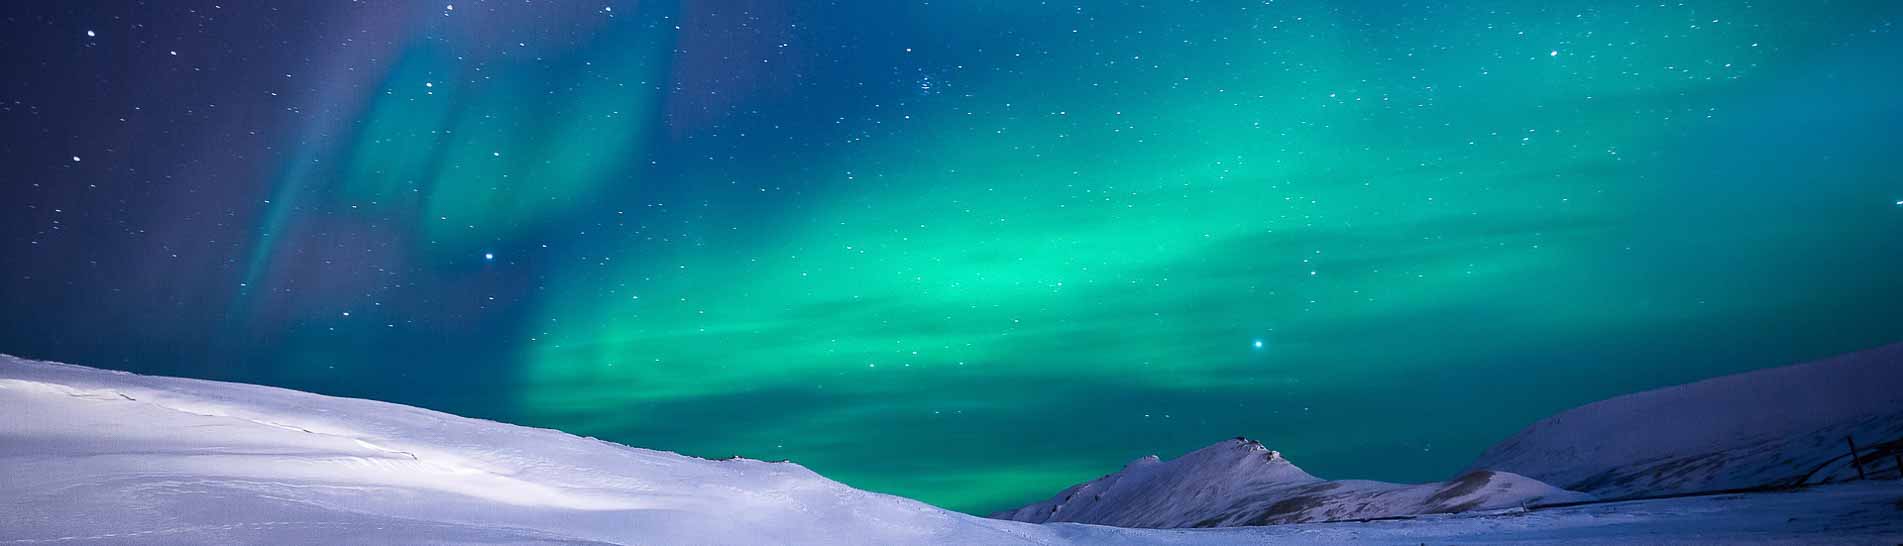 Nordlicht - Fotoreise Norwegen